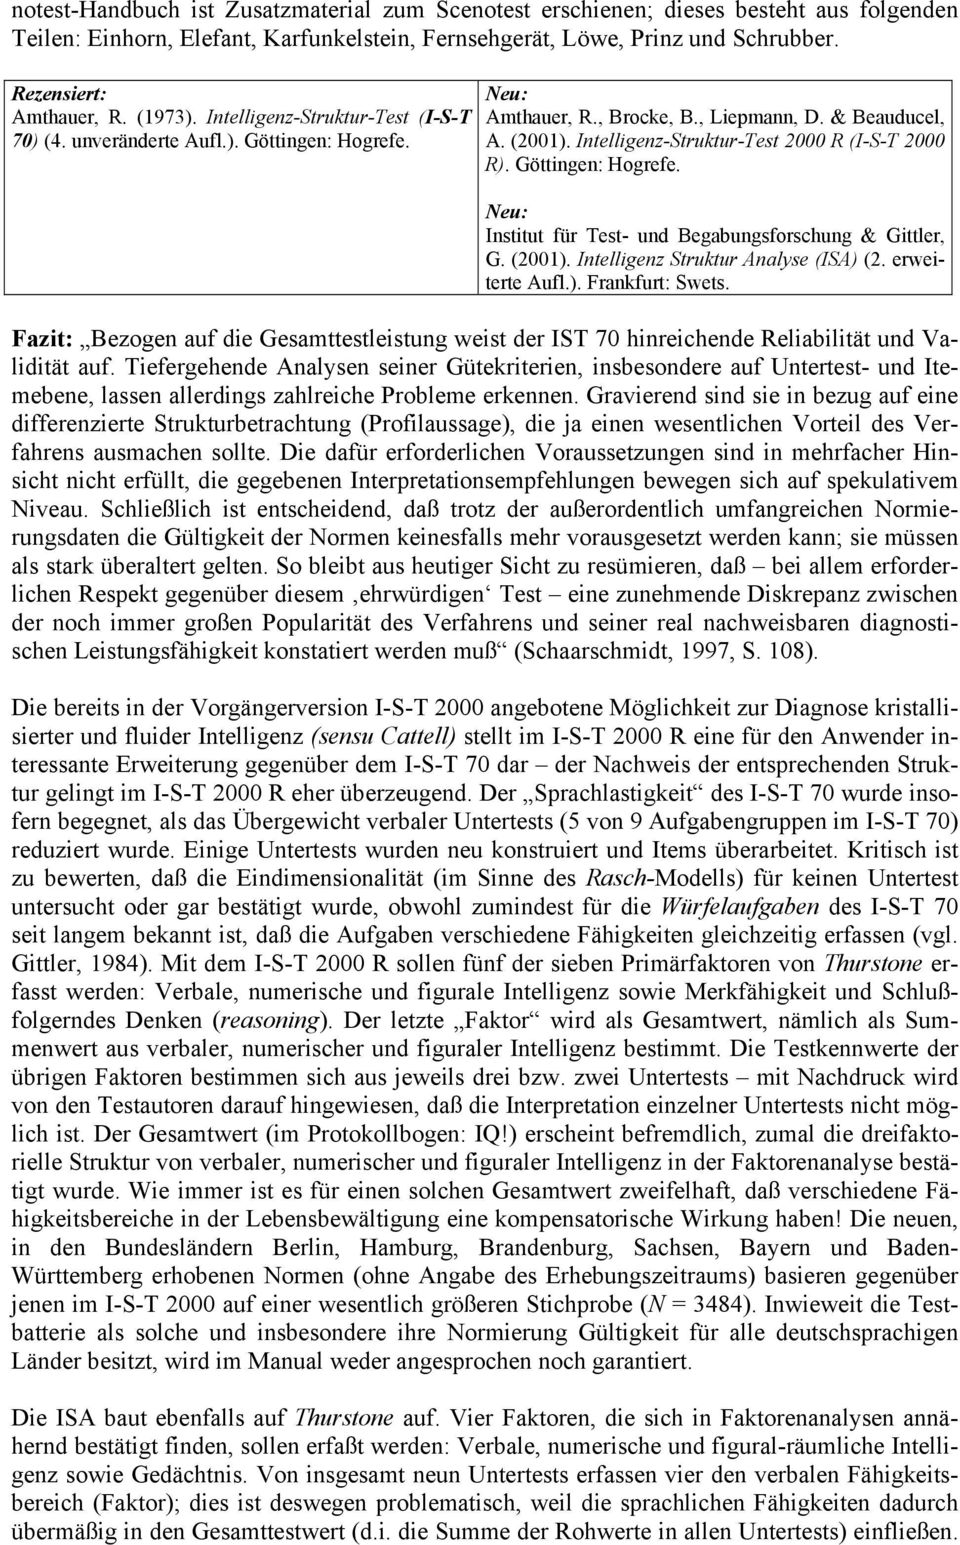 Göttingen: Hogrefe. Institut für Test- und Begabungsforschung & Gittler, G. (2001). Intelligenz Struktur Analyse (ISA) (2. erweiterte Aufl.). Frankfurt: Swets.